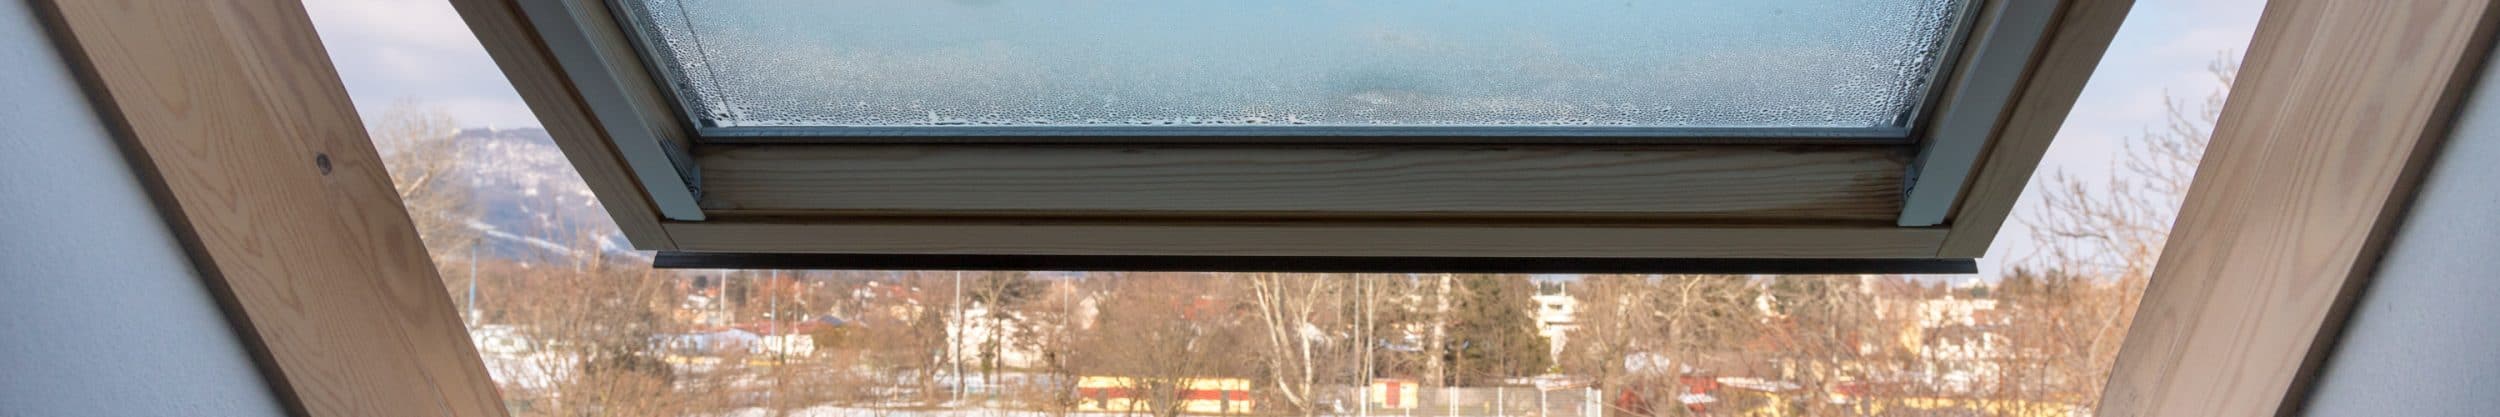 Nie mehr nasse Fenster im Bauernhaus: So lüften und heizen Sie richtig